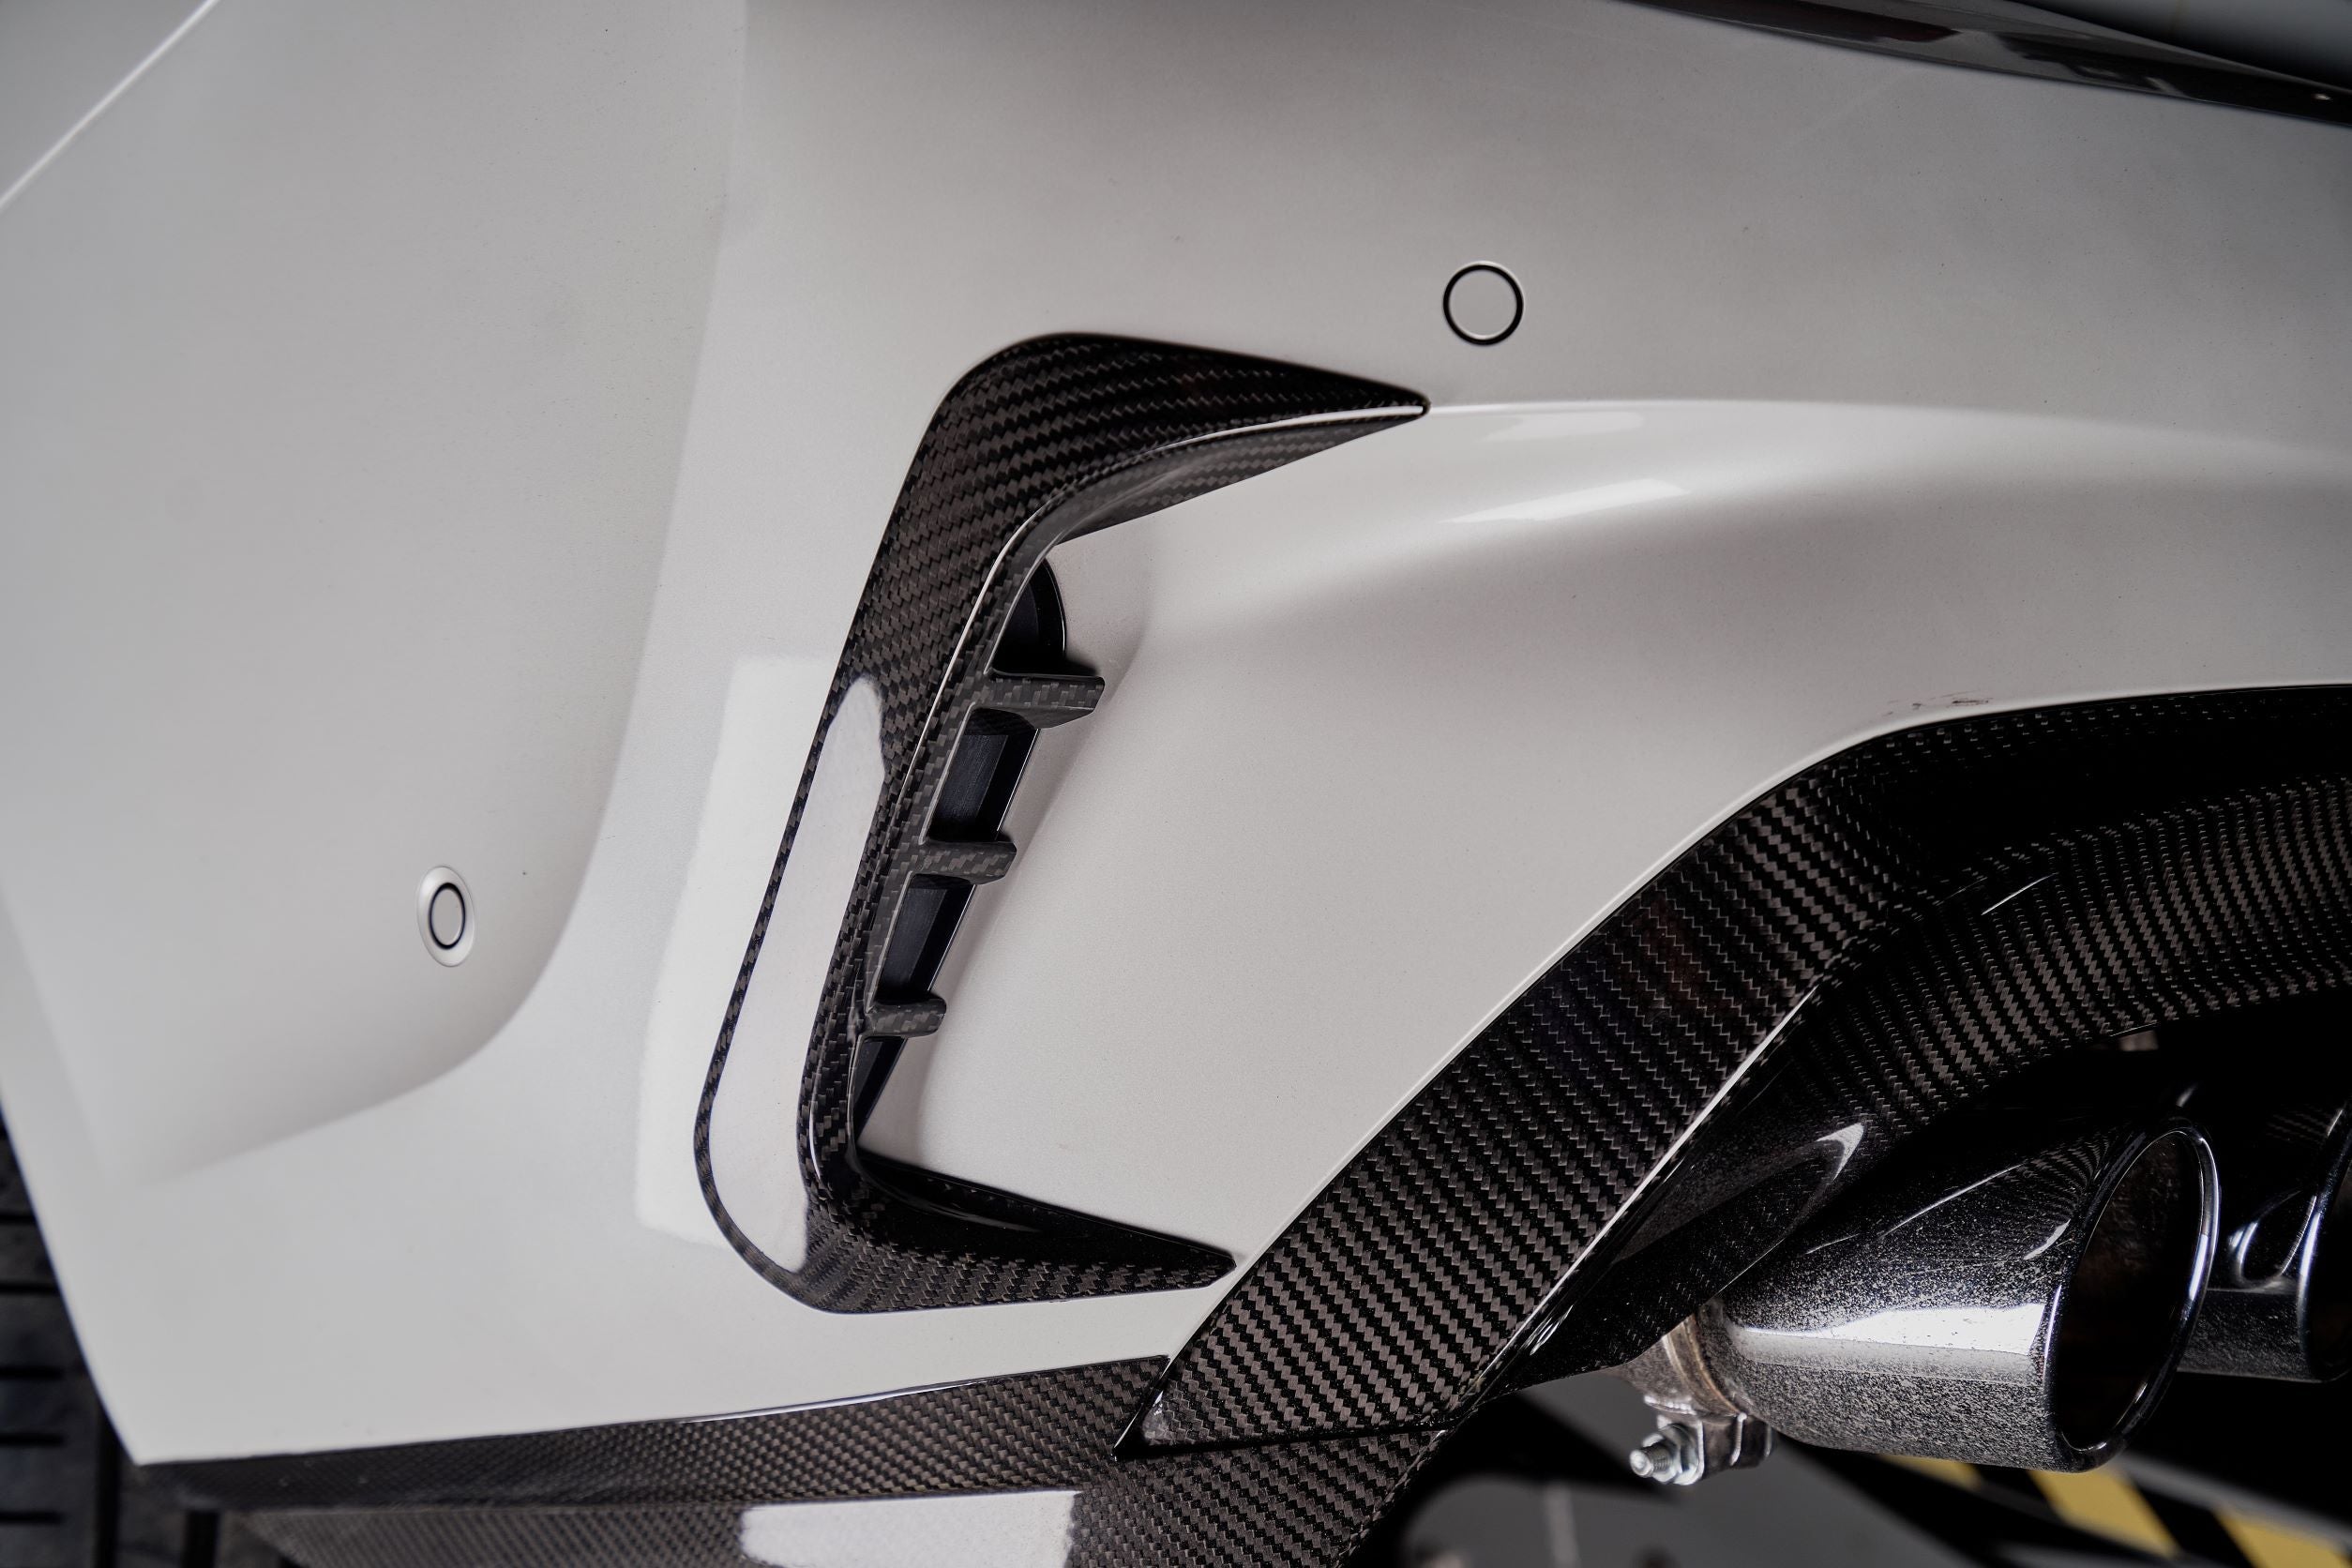 Karbel Carbon Dry Carbon Fiber Rear Bumper Canards for BMW 3 Series G20 2019-2022